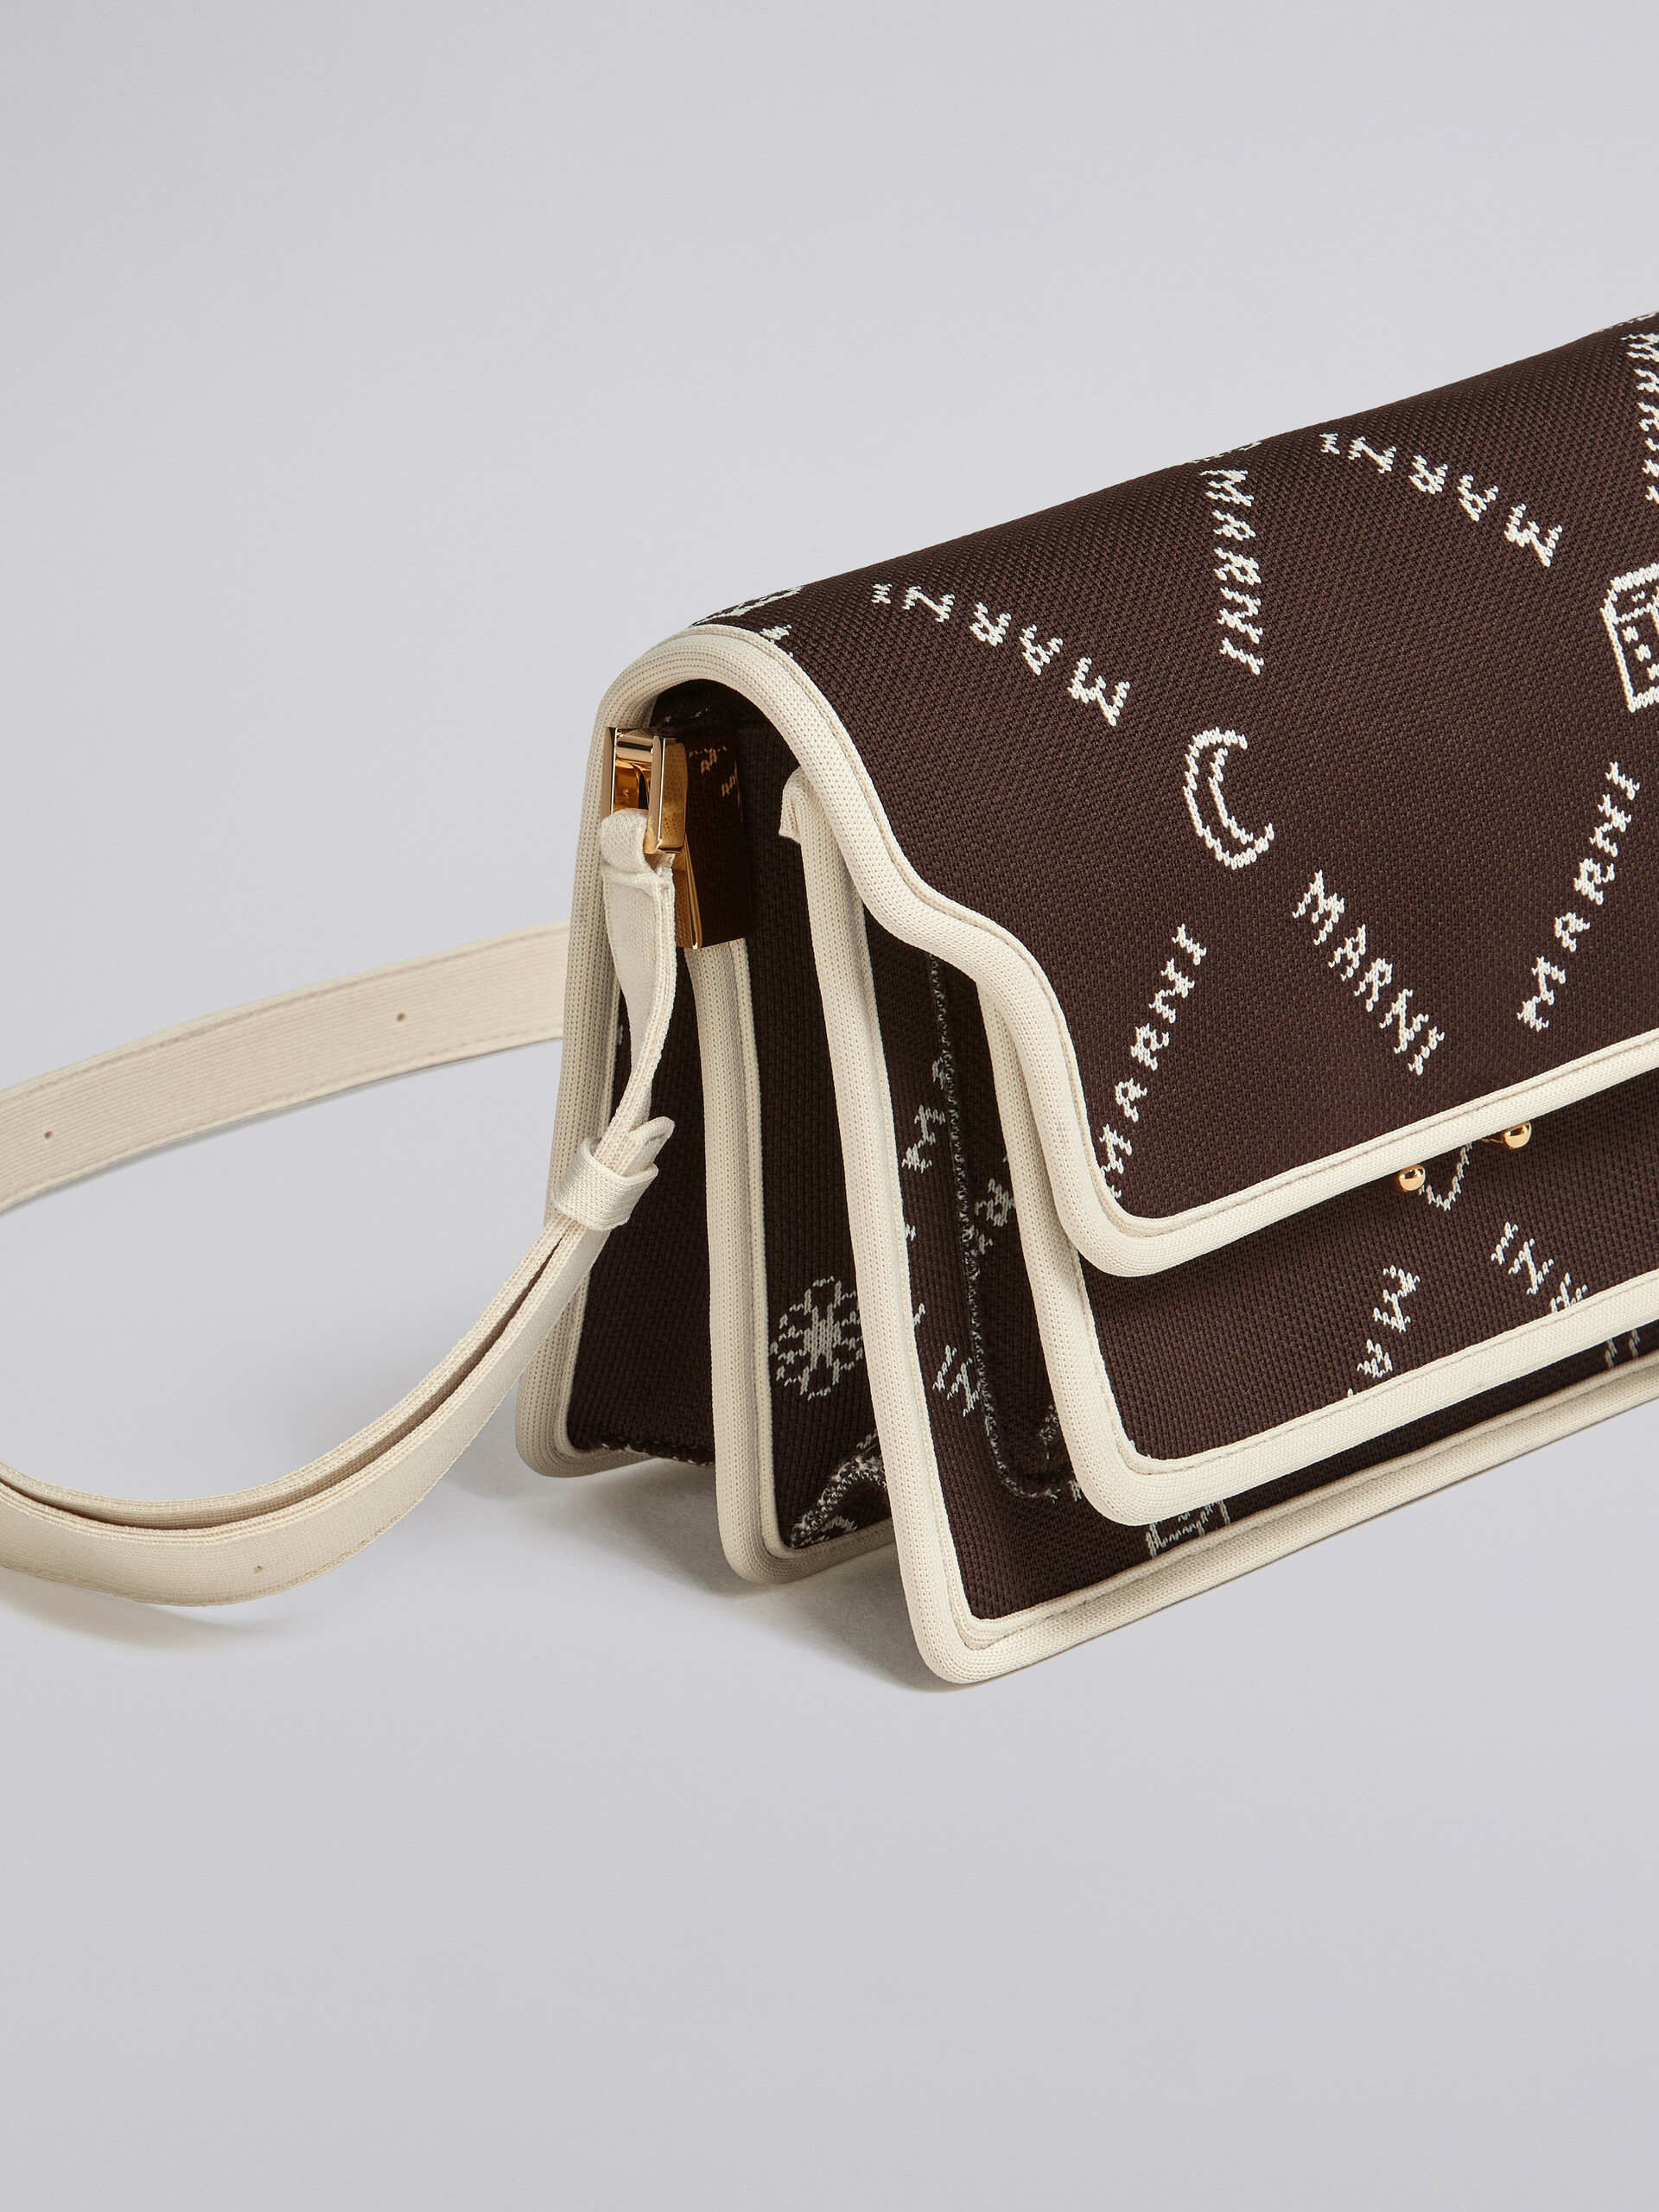 TRUNK SOFT medium bag in brown Marnigram jacquard - Shoulder Bags - Image 5